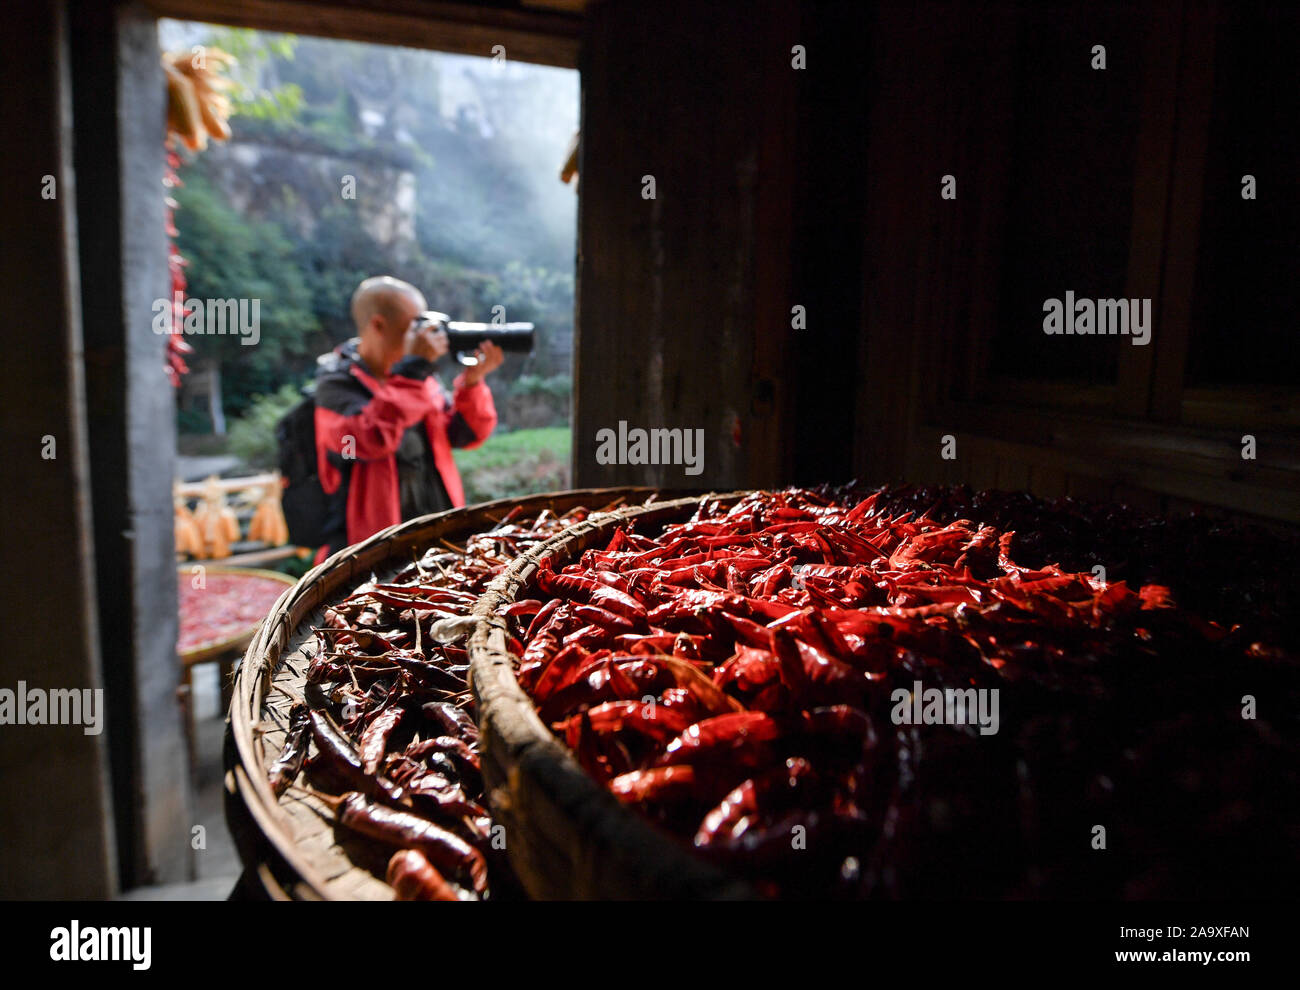 (191118) -- WUYUAN, 18 novembre 2019 (Xinhua) -- Cao Jiaxiang, un villageois photographe, prend des photos à l'extérieur d'une maison à Huangling Village de Wuyuan County, province de Jiangxi en Chine de l'Est, le 6 novembre 2019. Cao Jiaxiang, un agriculteur âgé de 44 ans, est tombé en amour avec la photographie en 1993 quand il achète son premier appareil photo. A démissionné de travailler en 2012, il devient photographe un villageois qui a été peu à peu d'enregistrement pendant des années sa bien-aimée ville natale, Huangling Village de Wuyuan County dans l'est de la Chine, la province de Jiangxi. Les photos qu'il a prises, distribué et a salué en ligne, est devenu un nom de carte de Wuyuan. (Xinhua/H Banque D'Images